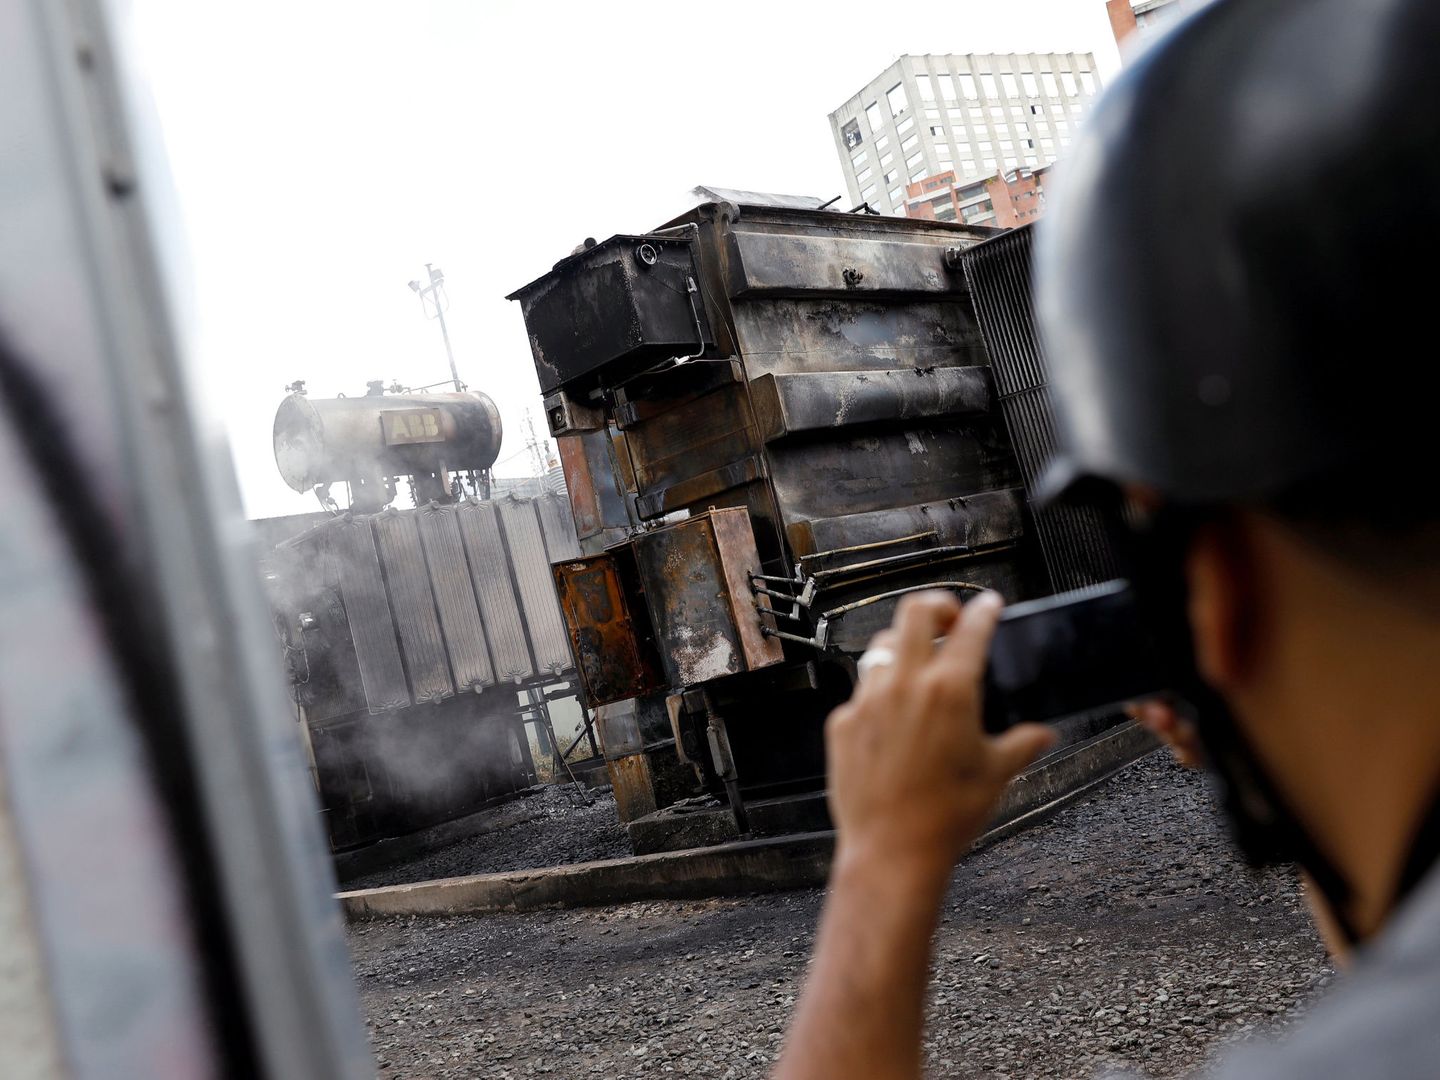 Un hombre hace fotos de una subestación eléctrica quemada en Caracas durante el apagón, el 11 de marzo de 2019. (Reuters)